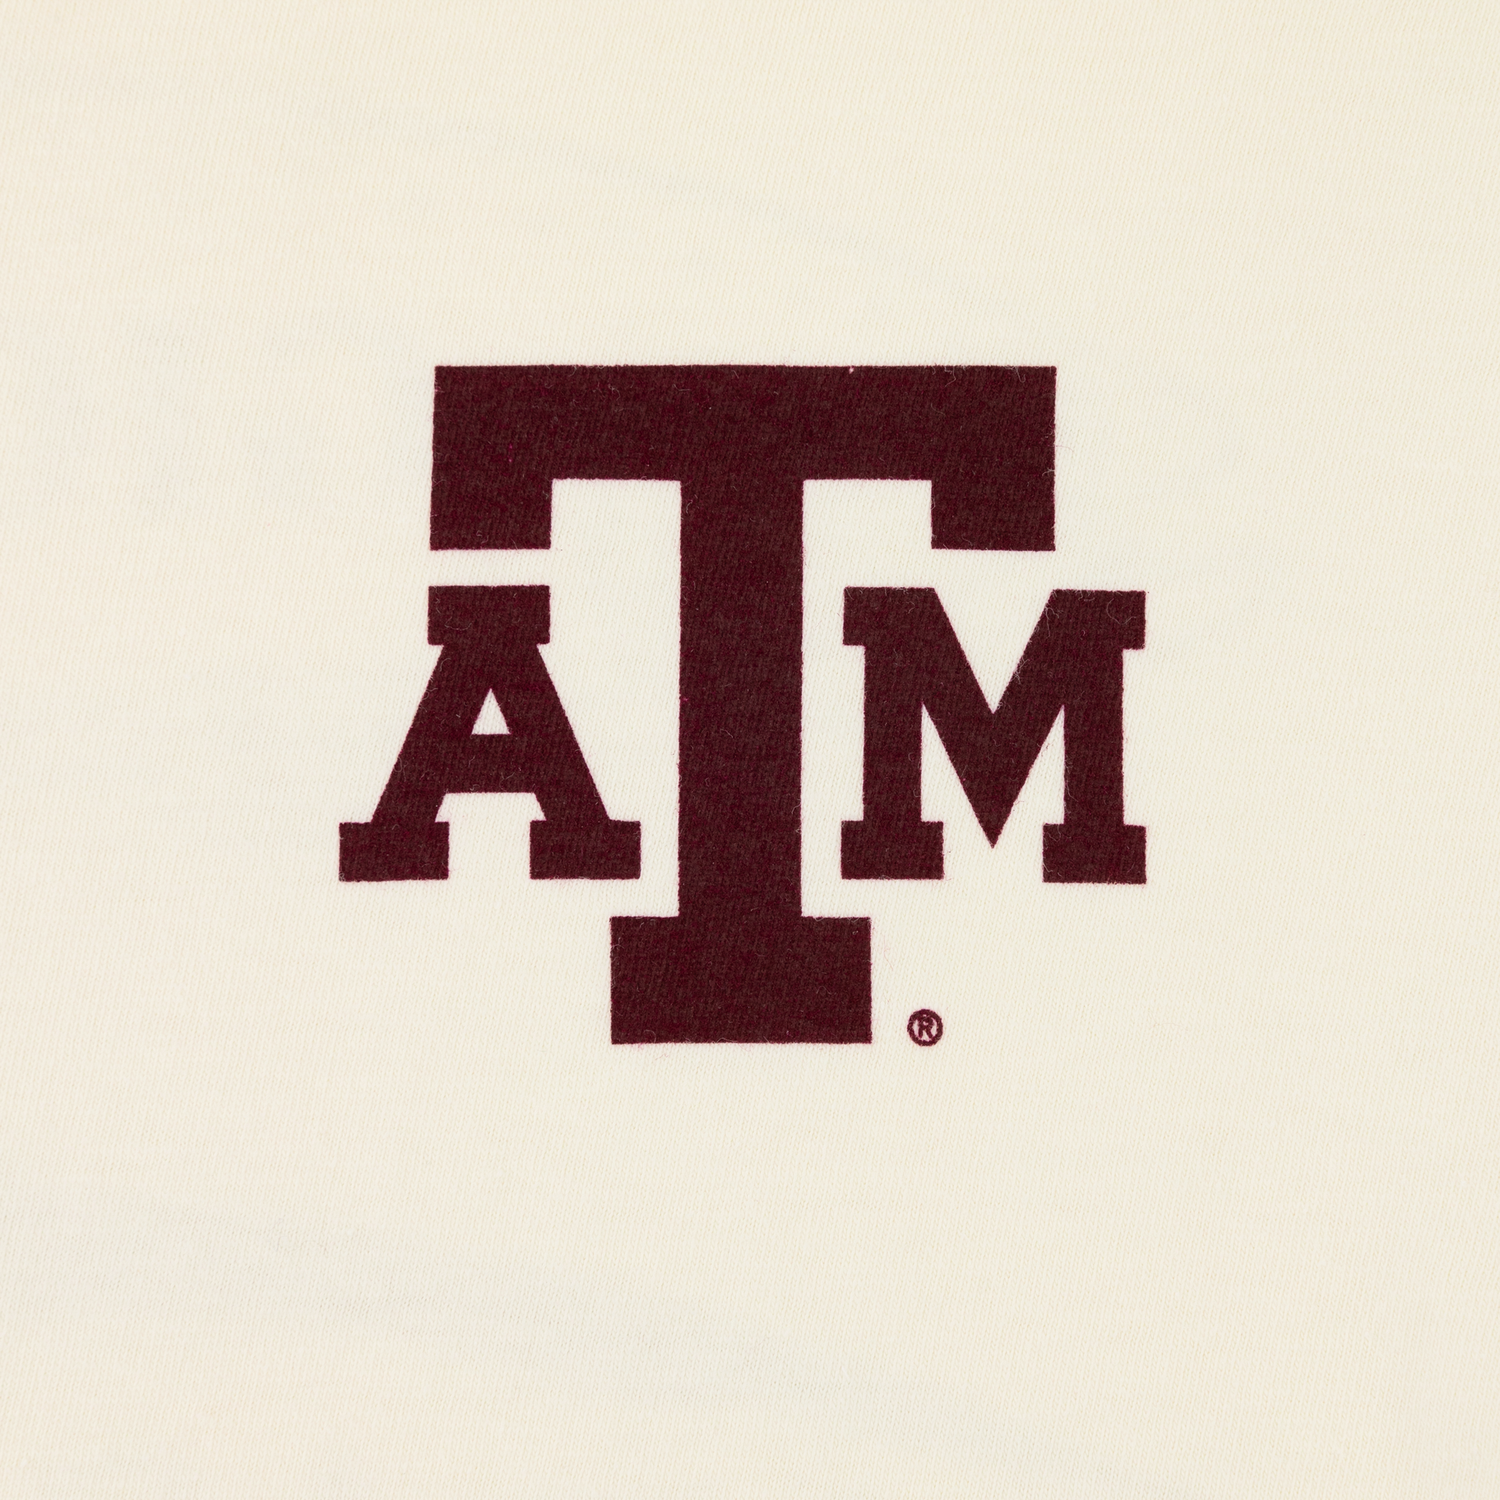 Texas A&M Aggie Triple Fish T-Shirt